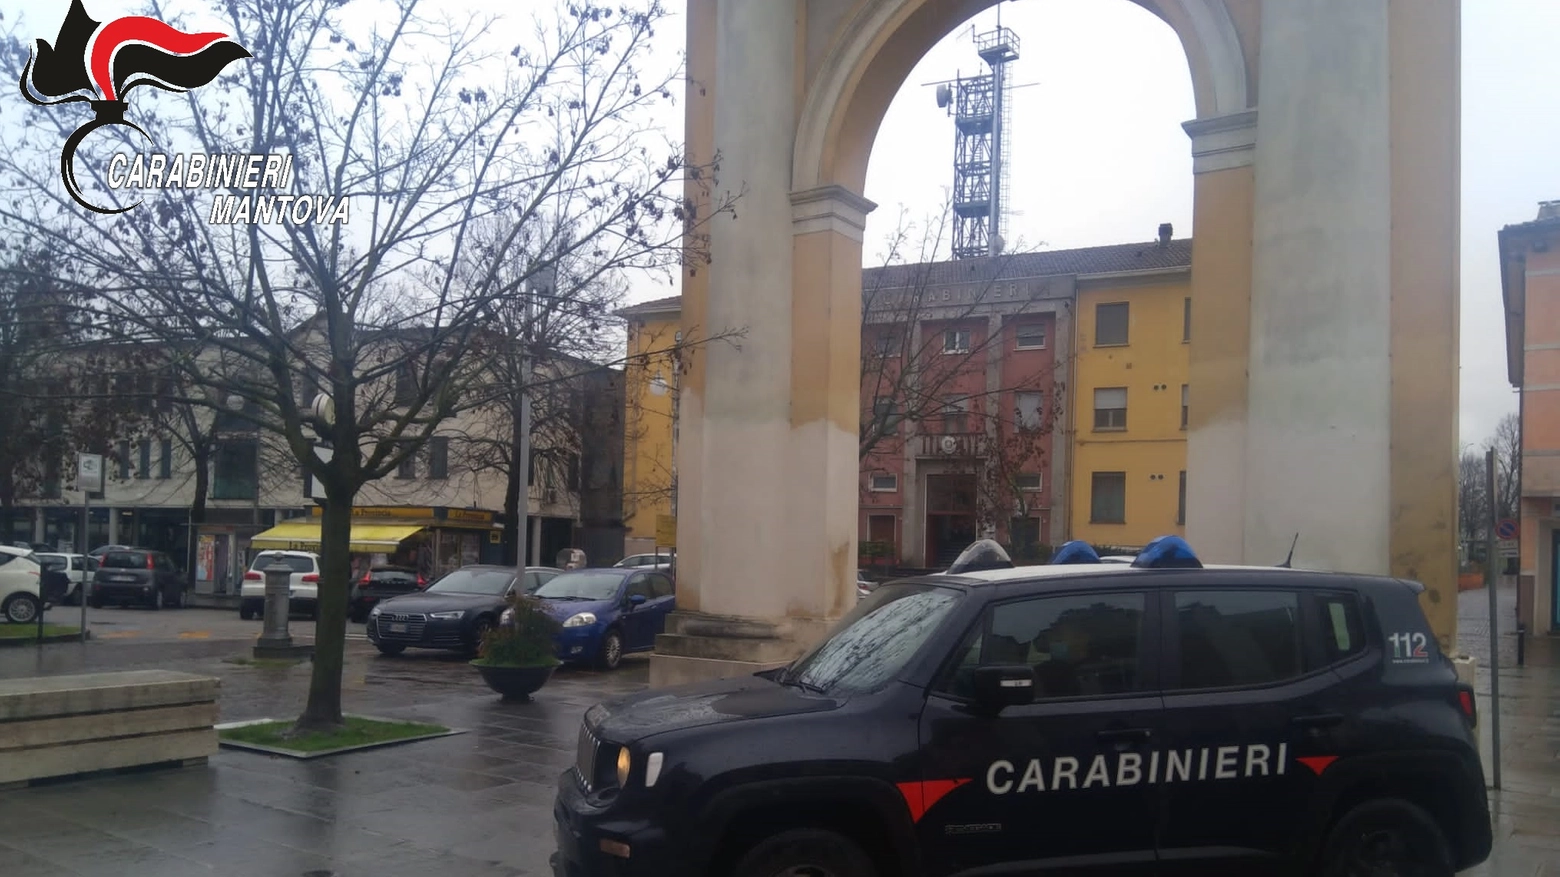 La ditta, nel Viadanese, è stata sospesa e multata dai carabinieri